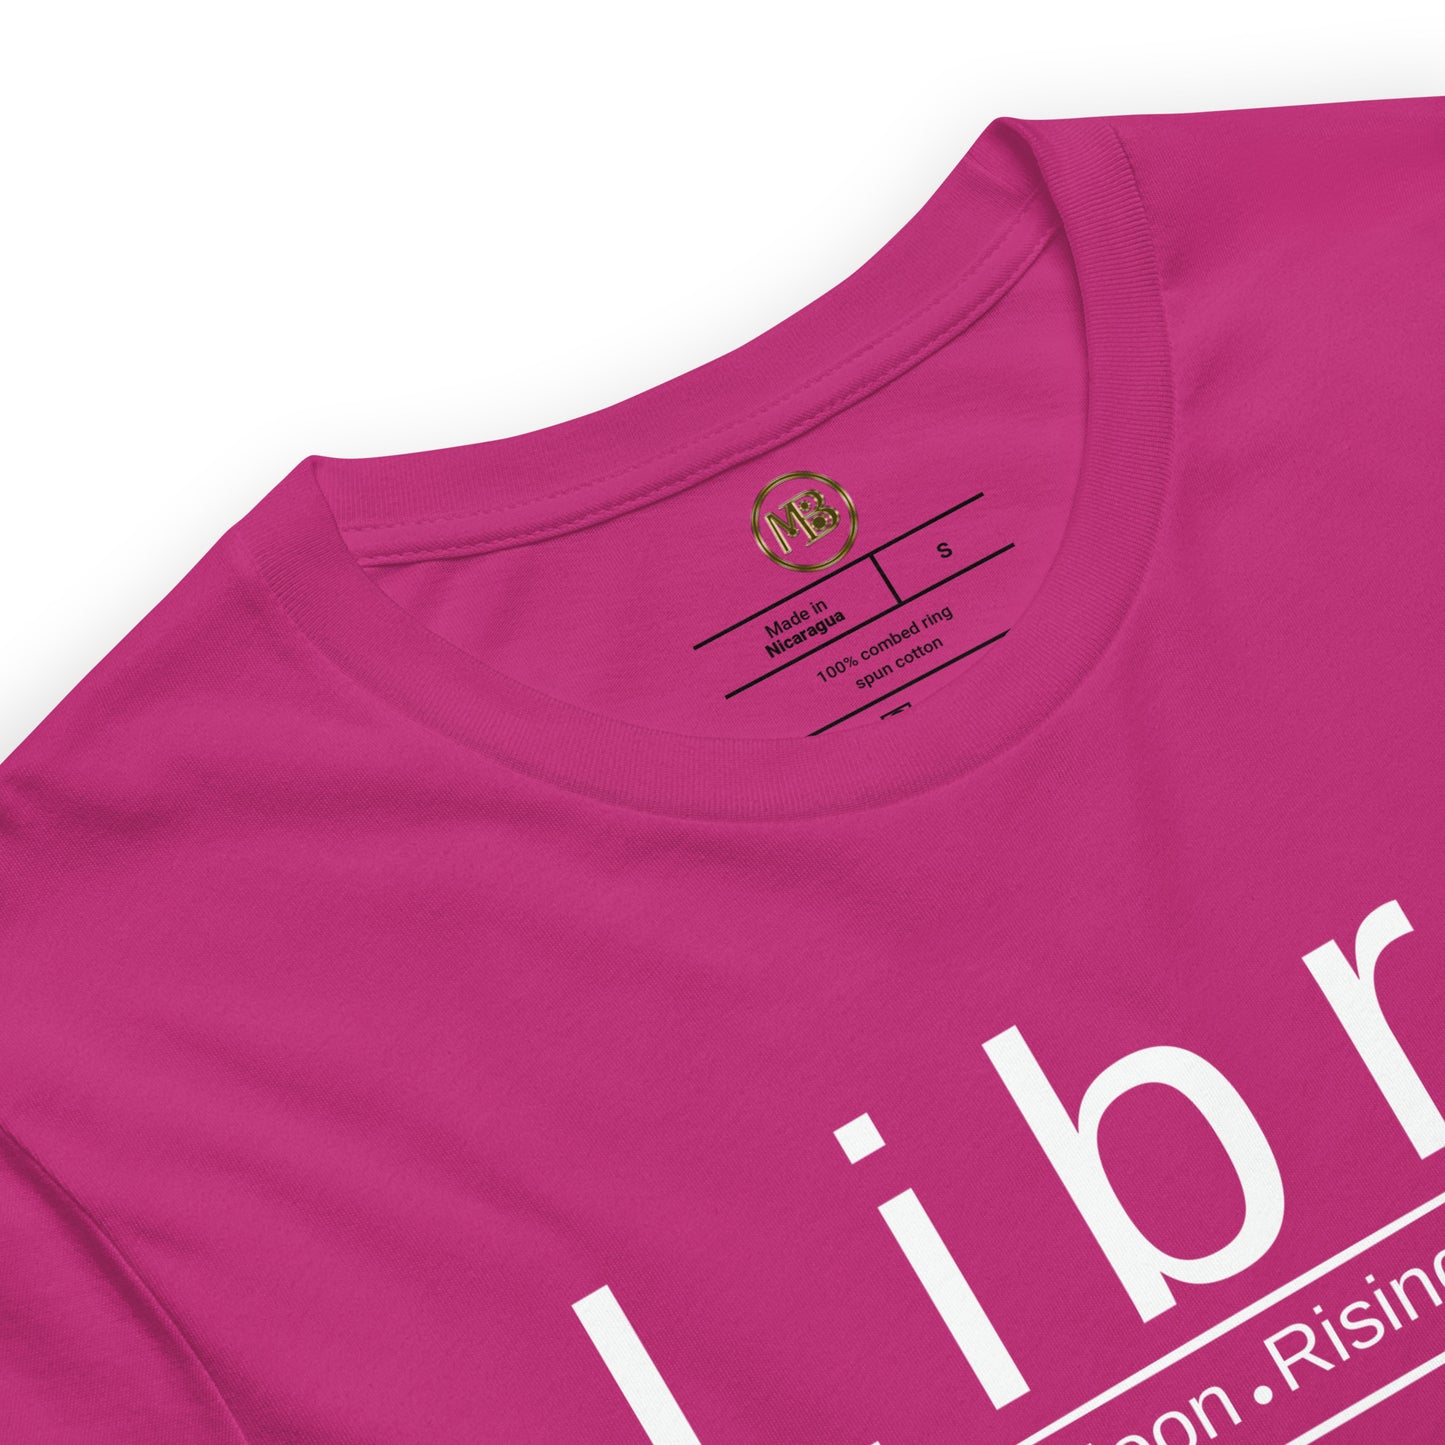 Libra Zodiac Unisex T-Shirt